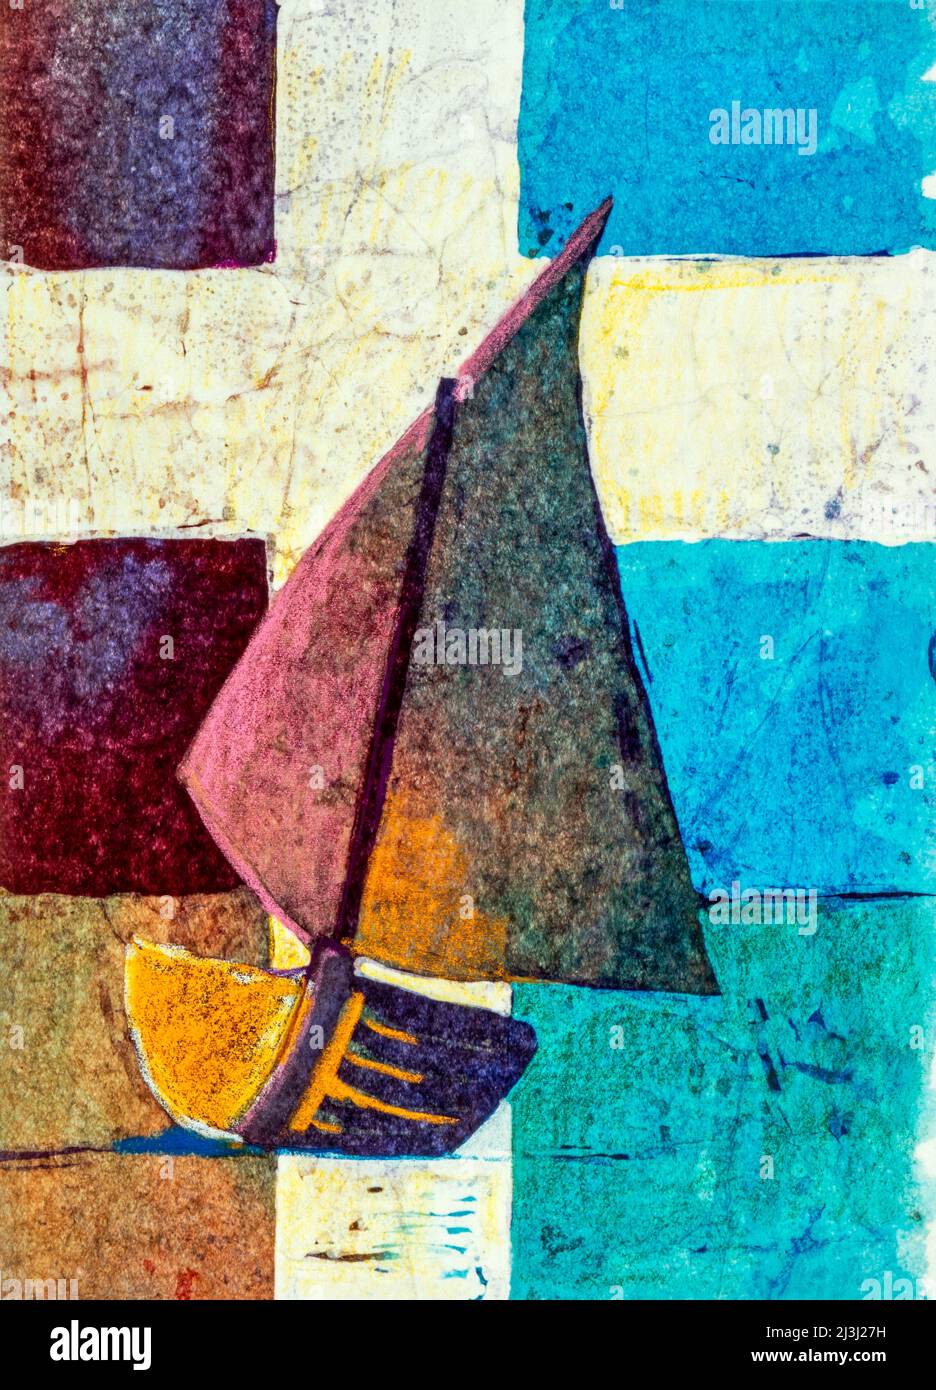 Batika-Aquarell auf japanischem Papier von Regine Martin Segelschiff, helles Kreuz, symbolisches Bild für das Lied: Ein Schiff, das sich Kirche nennt, segelt durch das Meer der Zeit das Ziel, das ihm die Richtung zeigt, heißt Gottes Ewigkeit Stockfoto